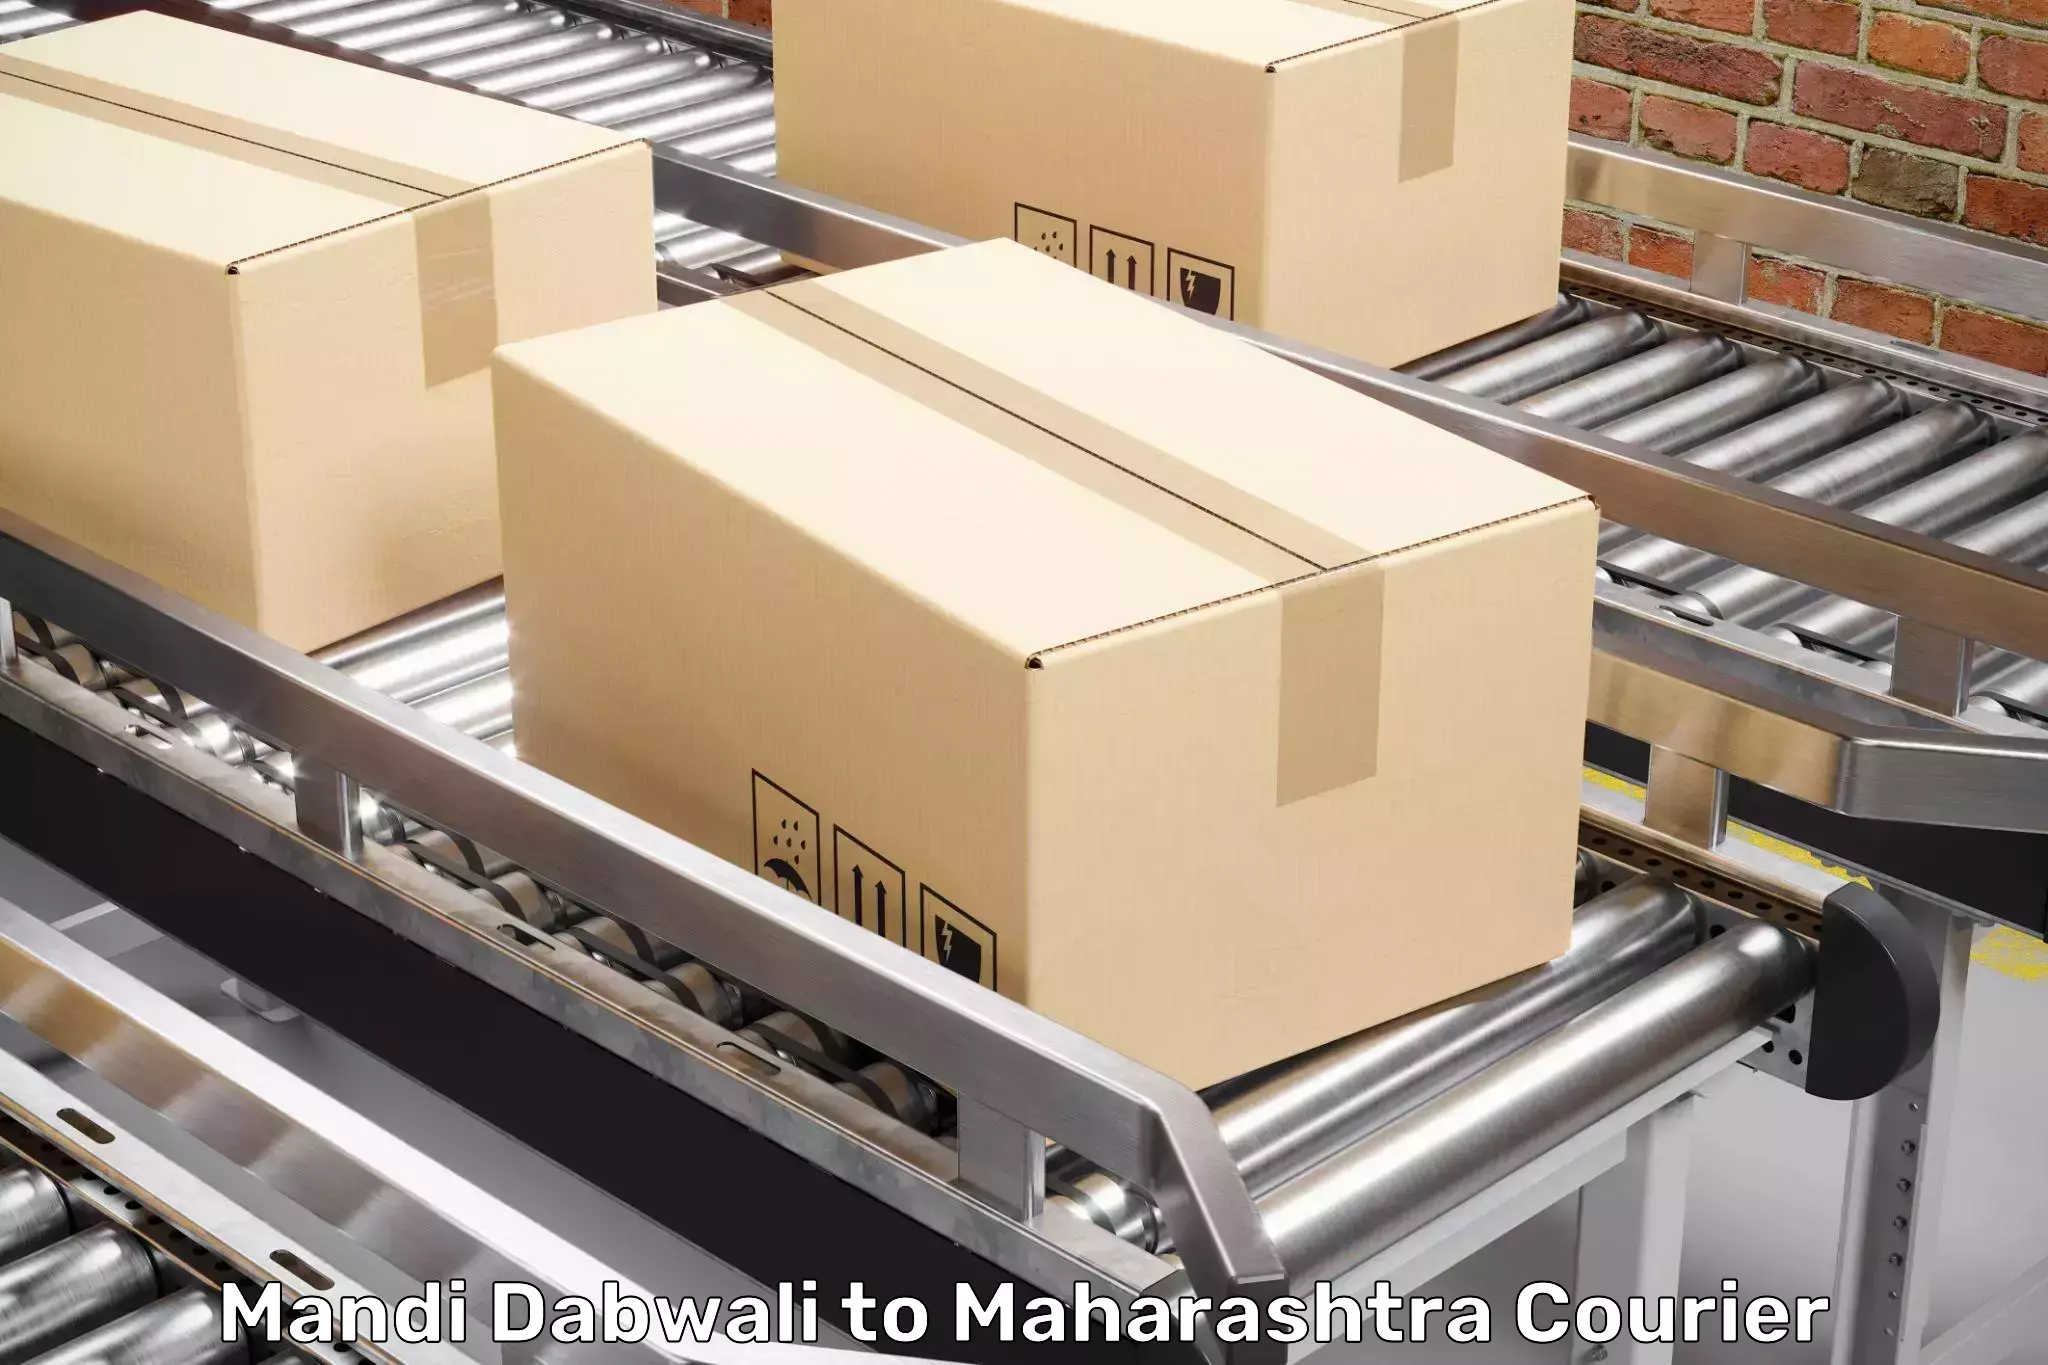 Furniture transport company Mandi Dabwali to Nira